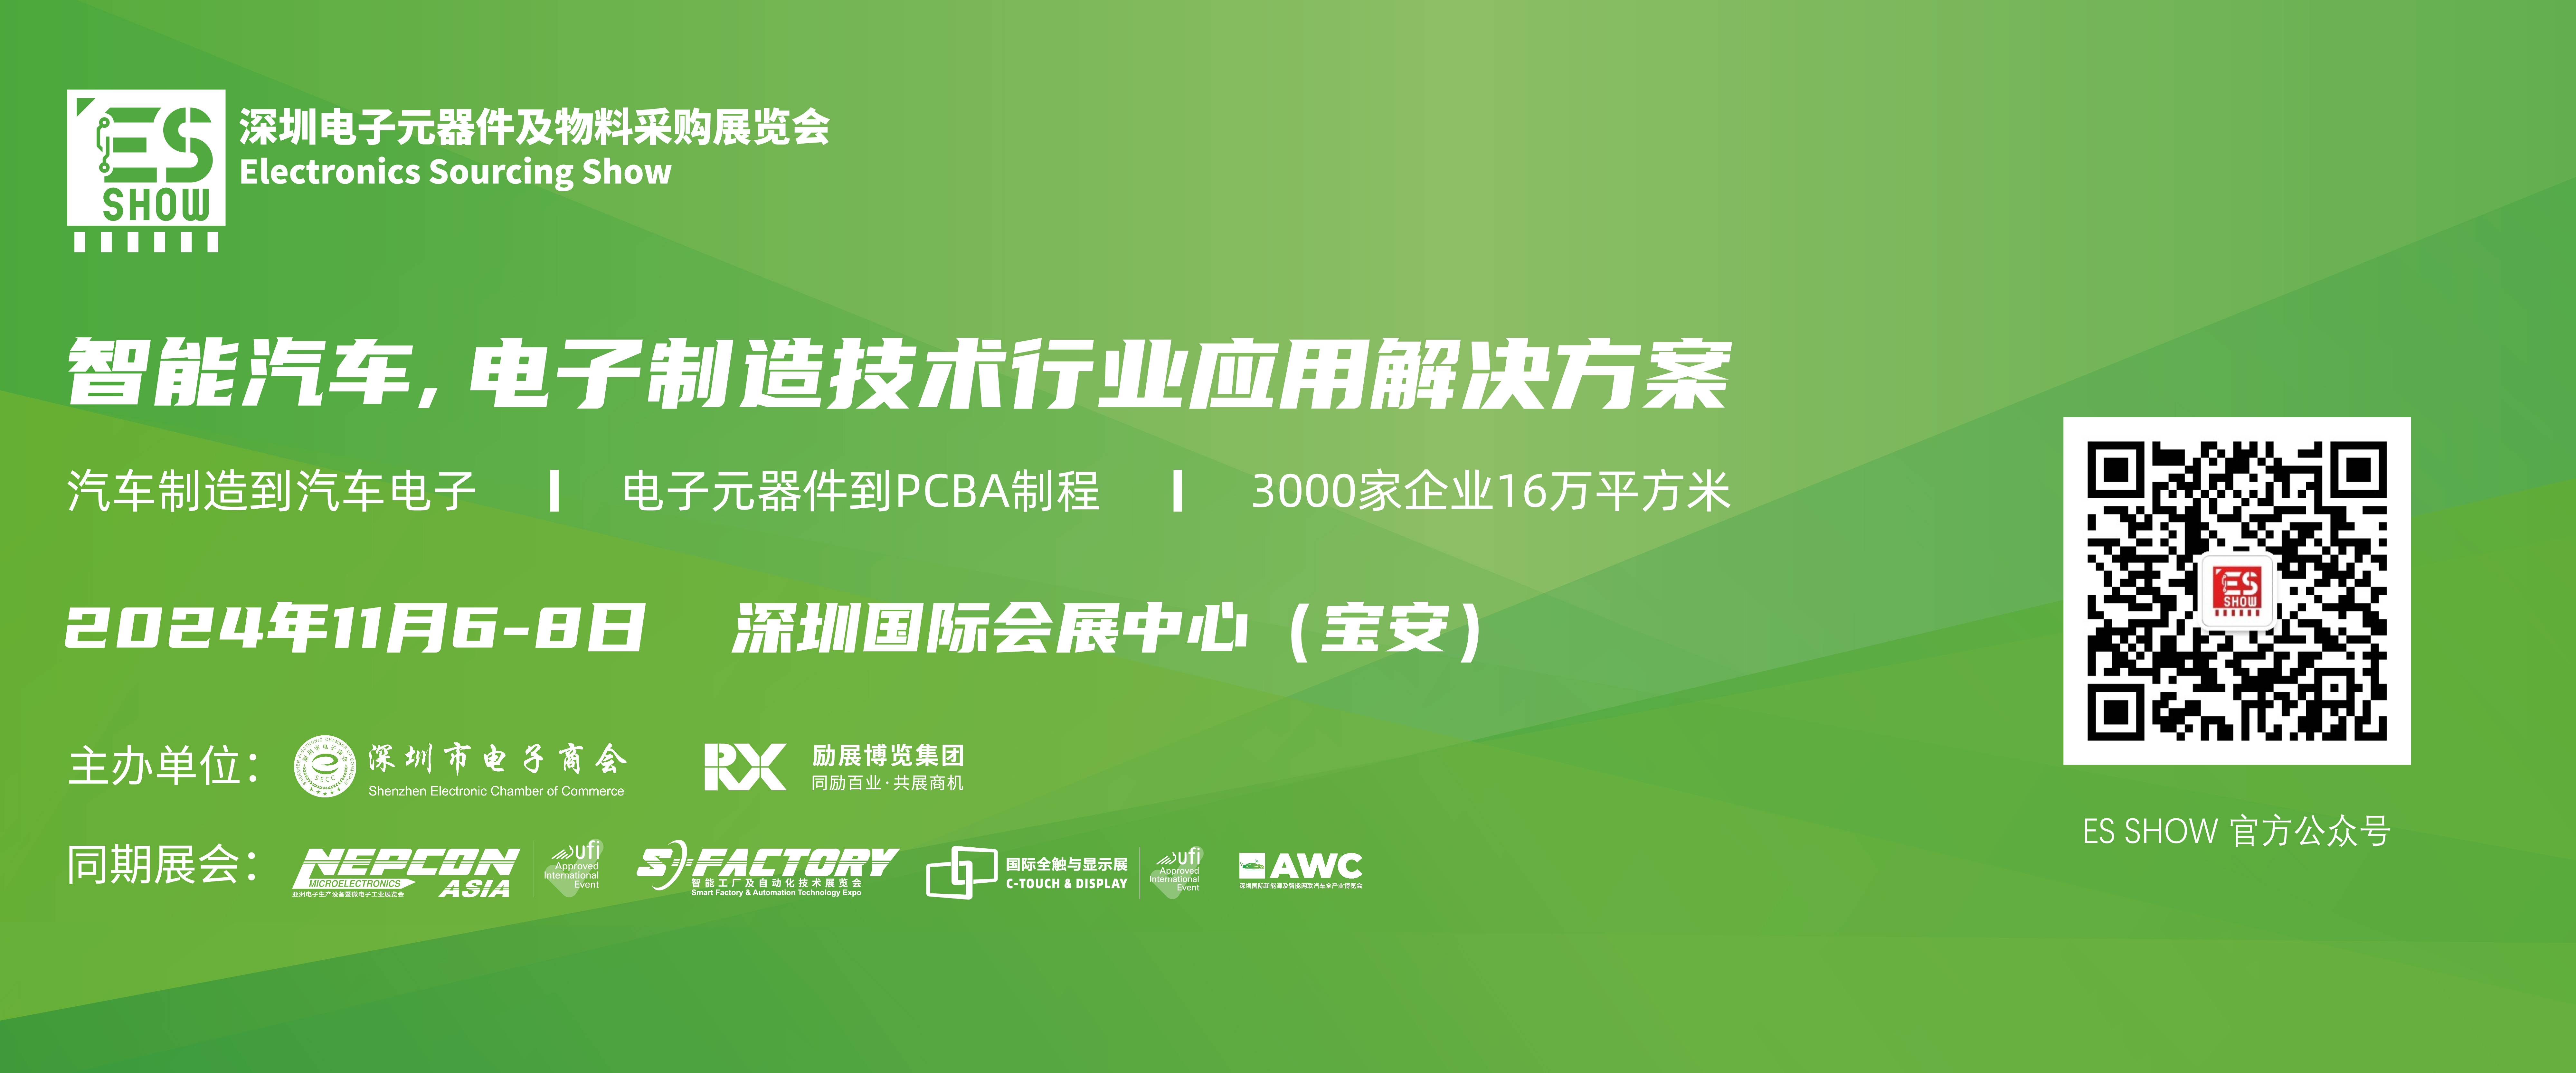 BLDC 电机控制 芯片 深圳电子展 华南电子展 中国电子展